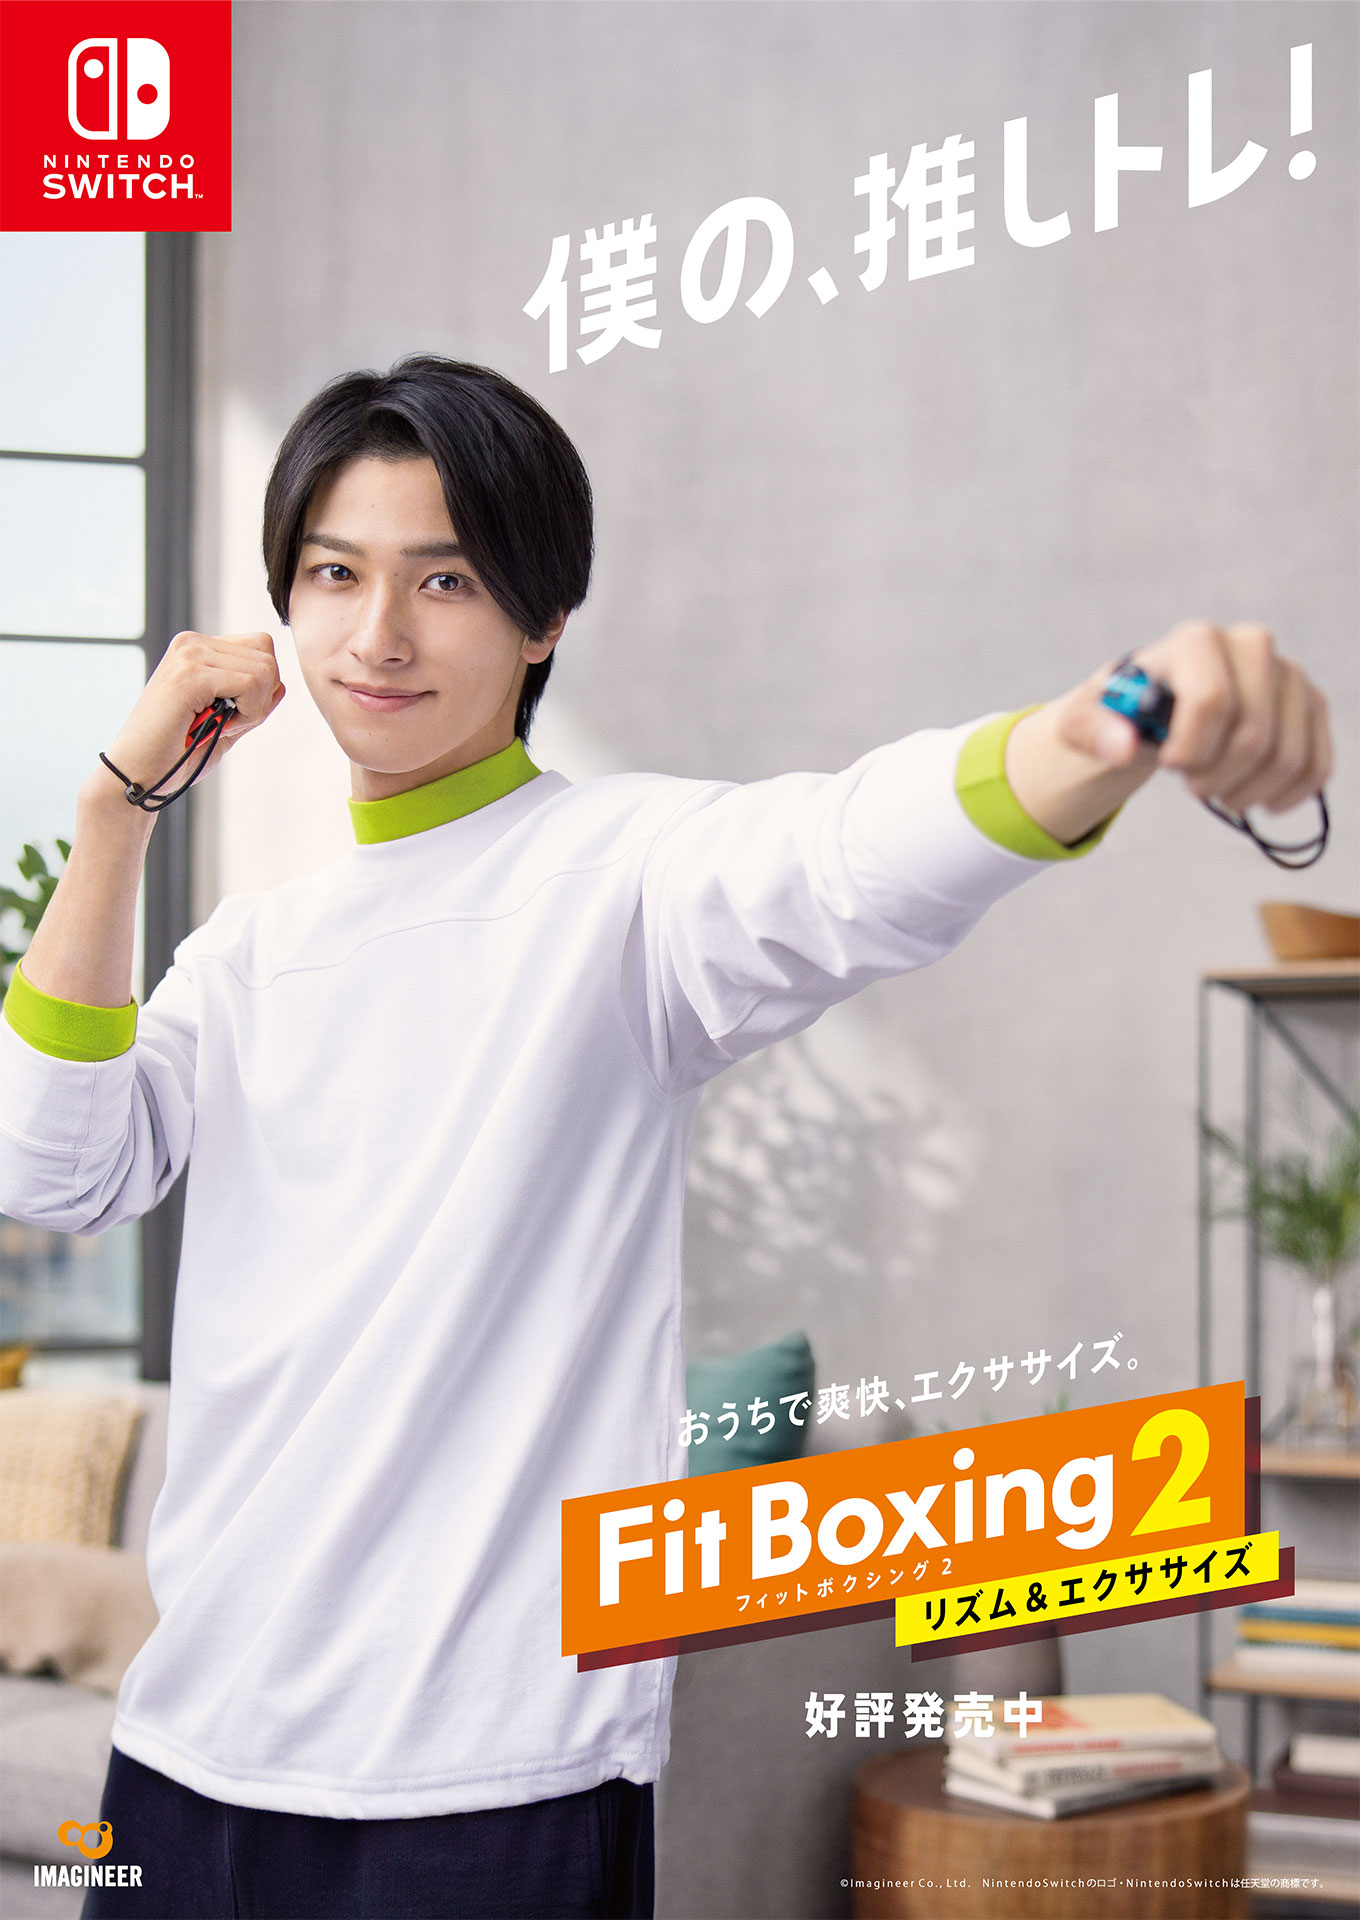 Fit Boxing 2 新キービジュアル